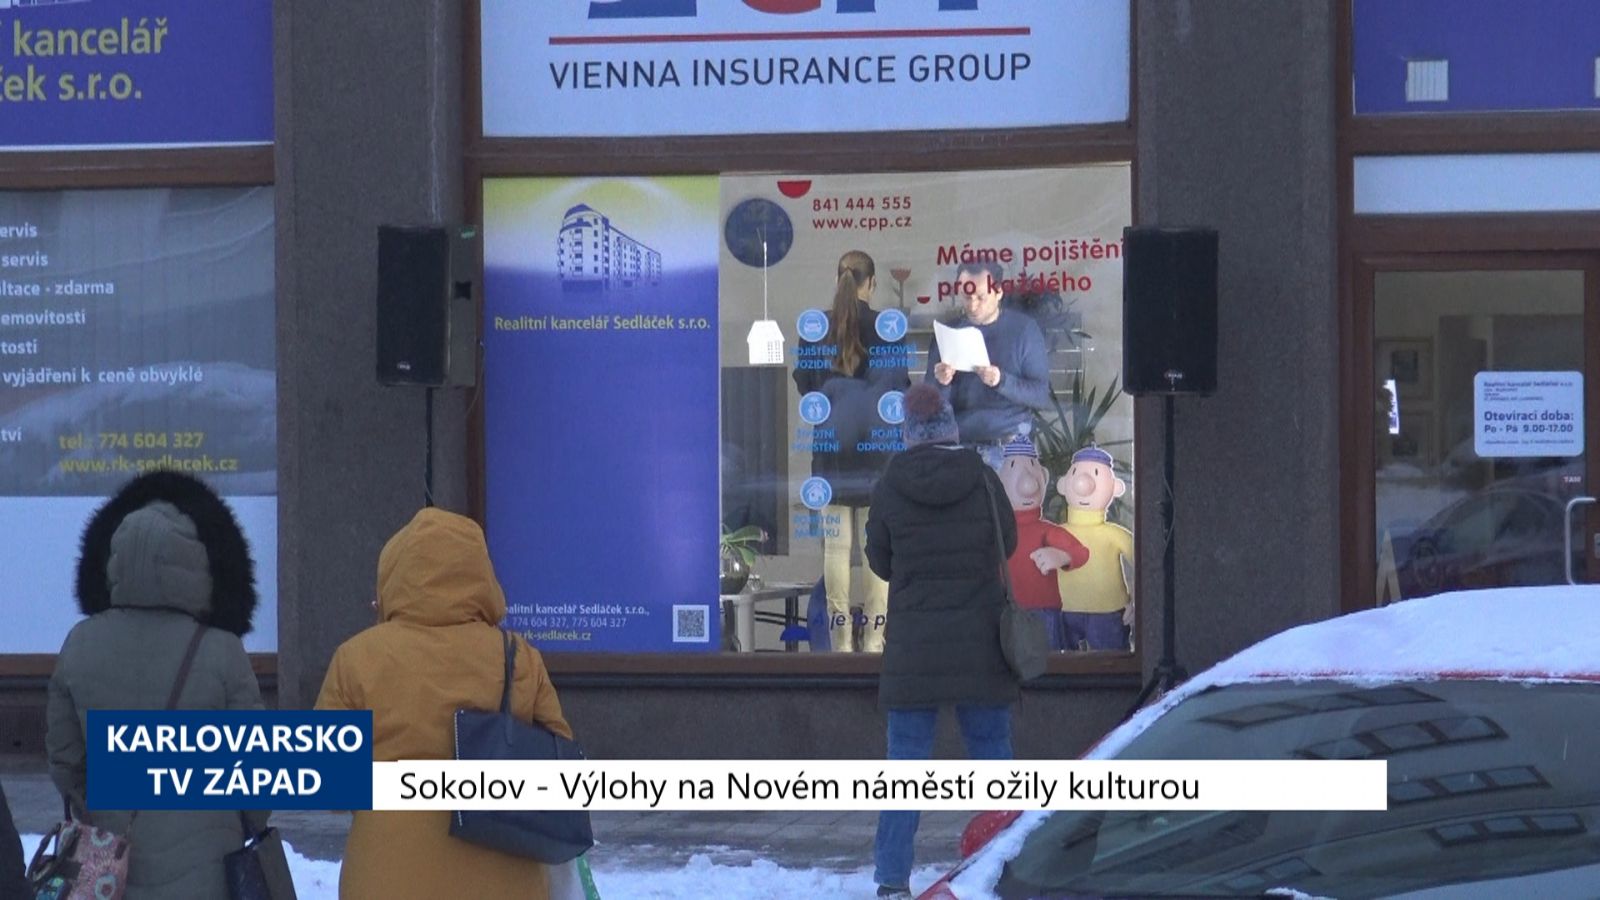 Sokolov: Výlohy na Novém náměstí ožily kulturou (TV Západ)